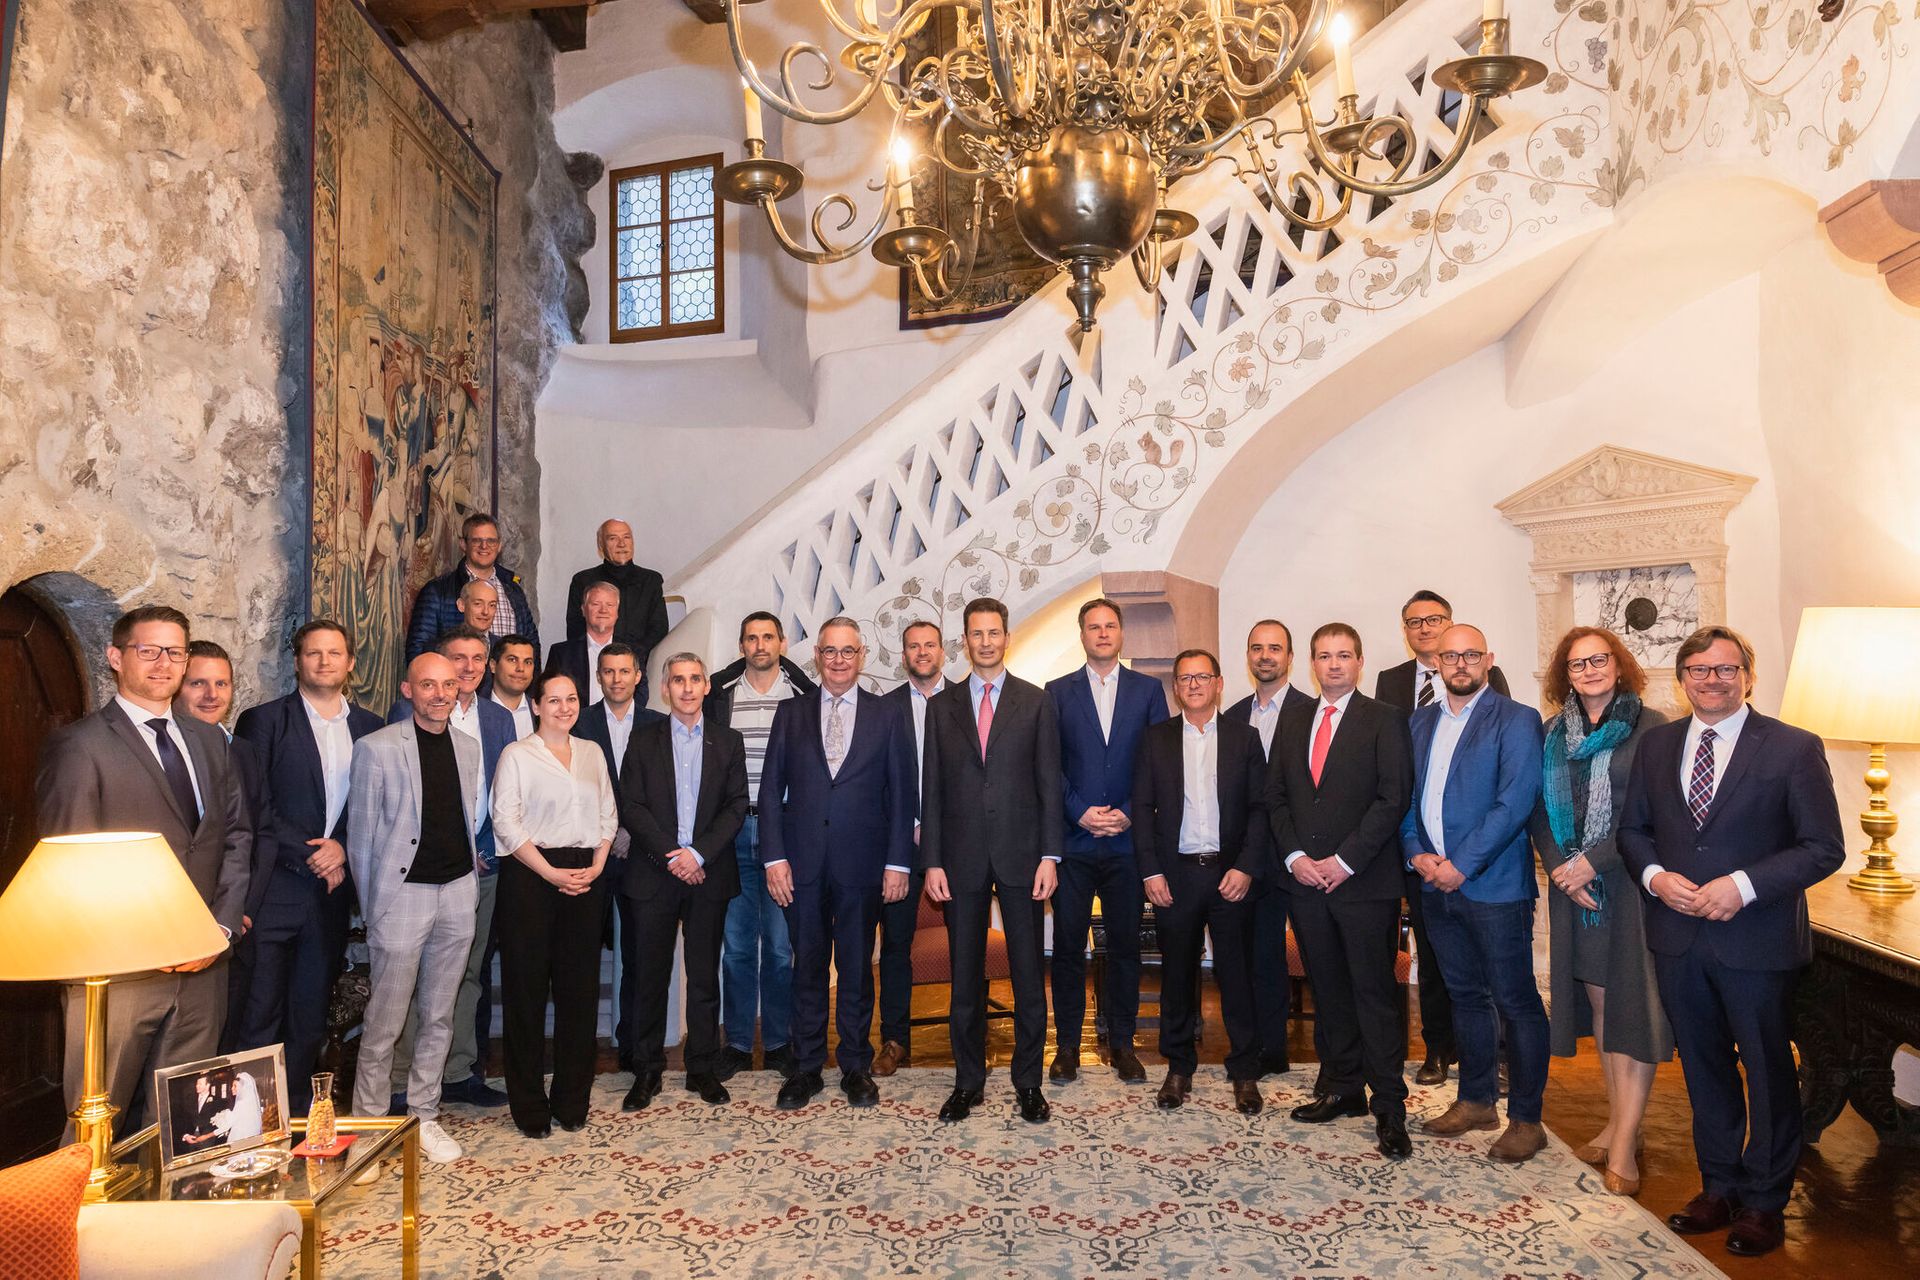 La rencontre entre les XNUMX membres du conseil d'administration de l'initiative digital-liechtenstein-li et le prince héritier Alois von und zu Liechtenstein au château de Vaduz